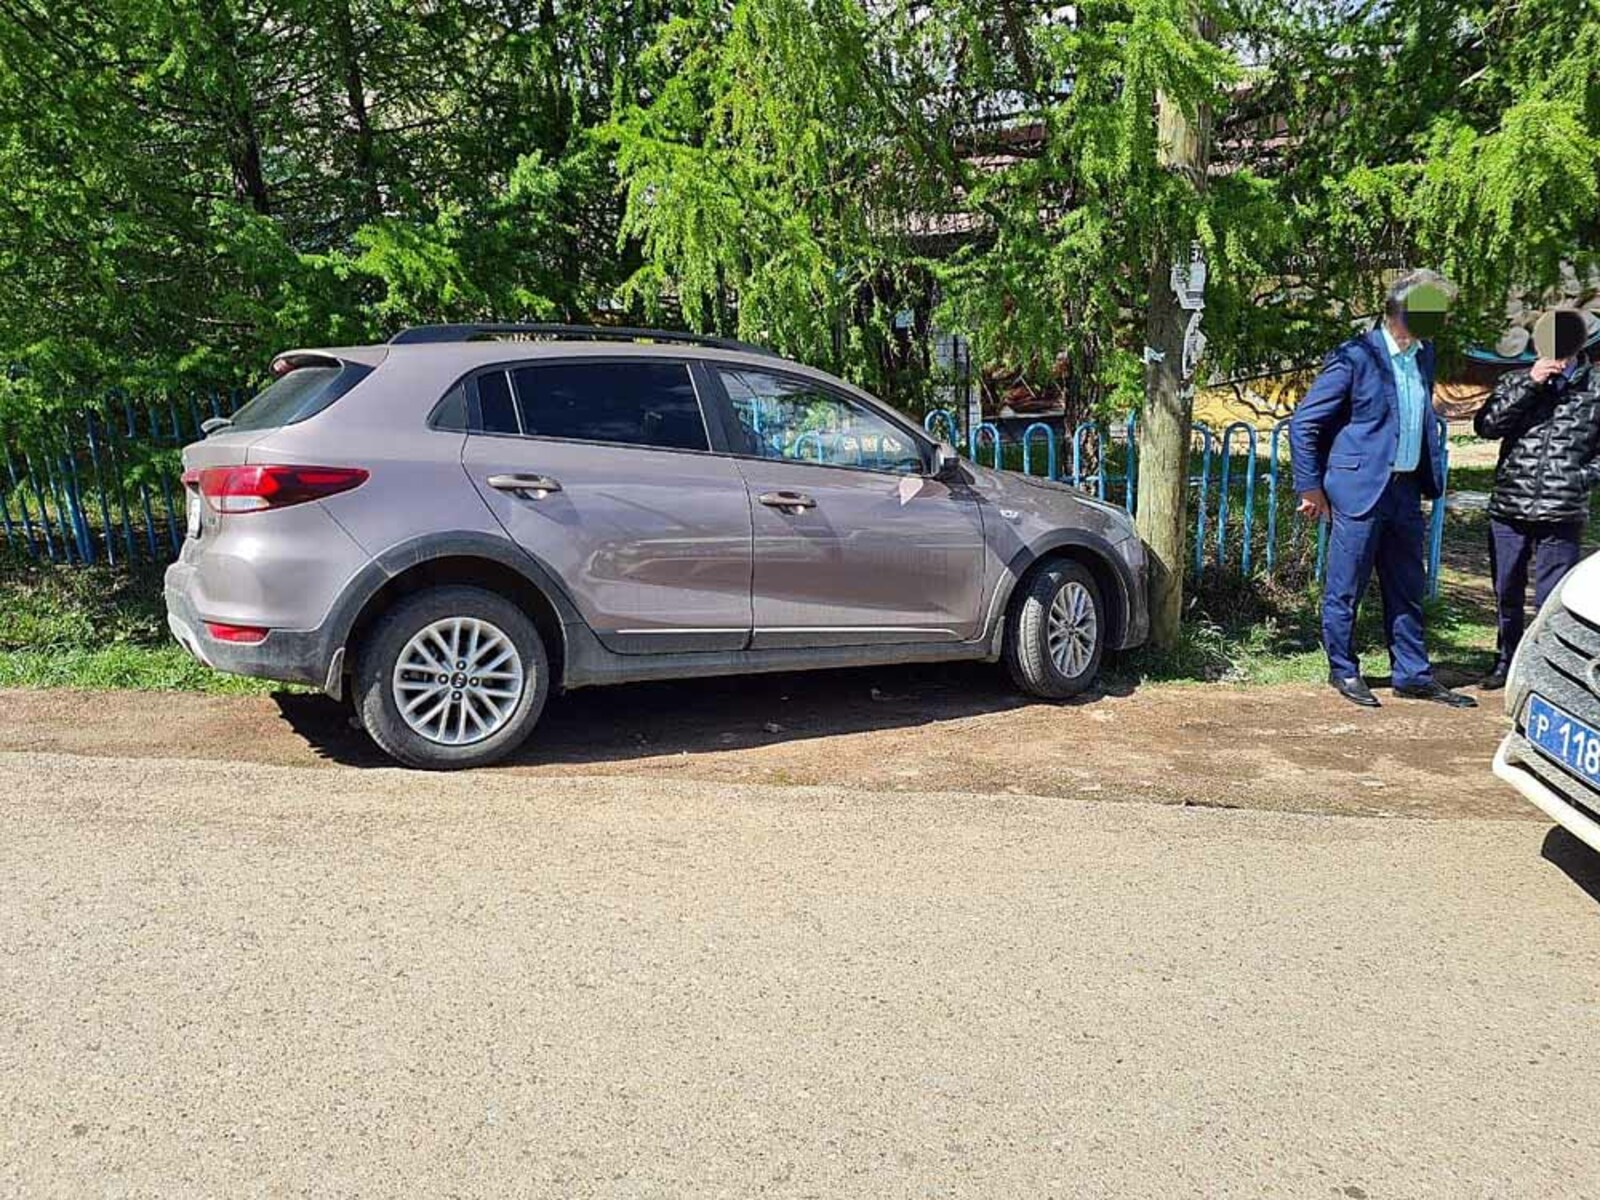 В Башкирии припаркованная «Киа» наехала на владелицу